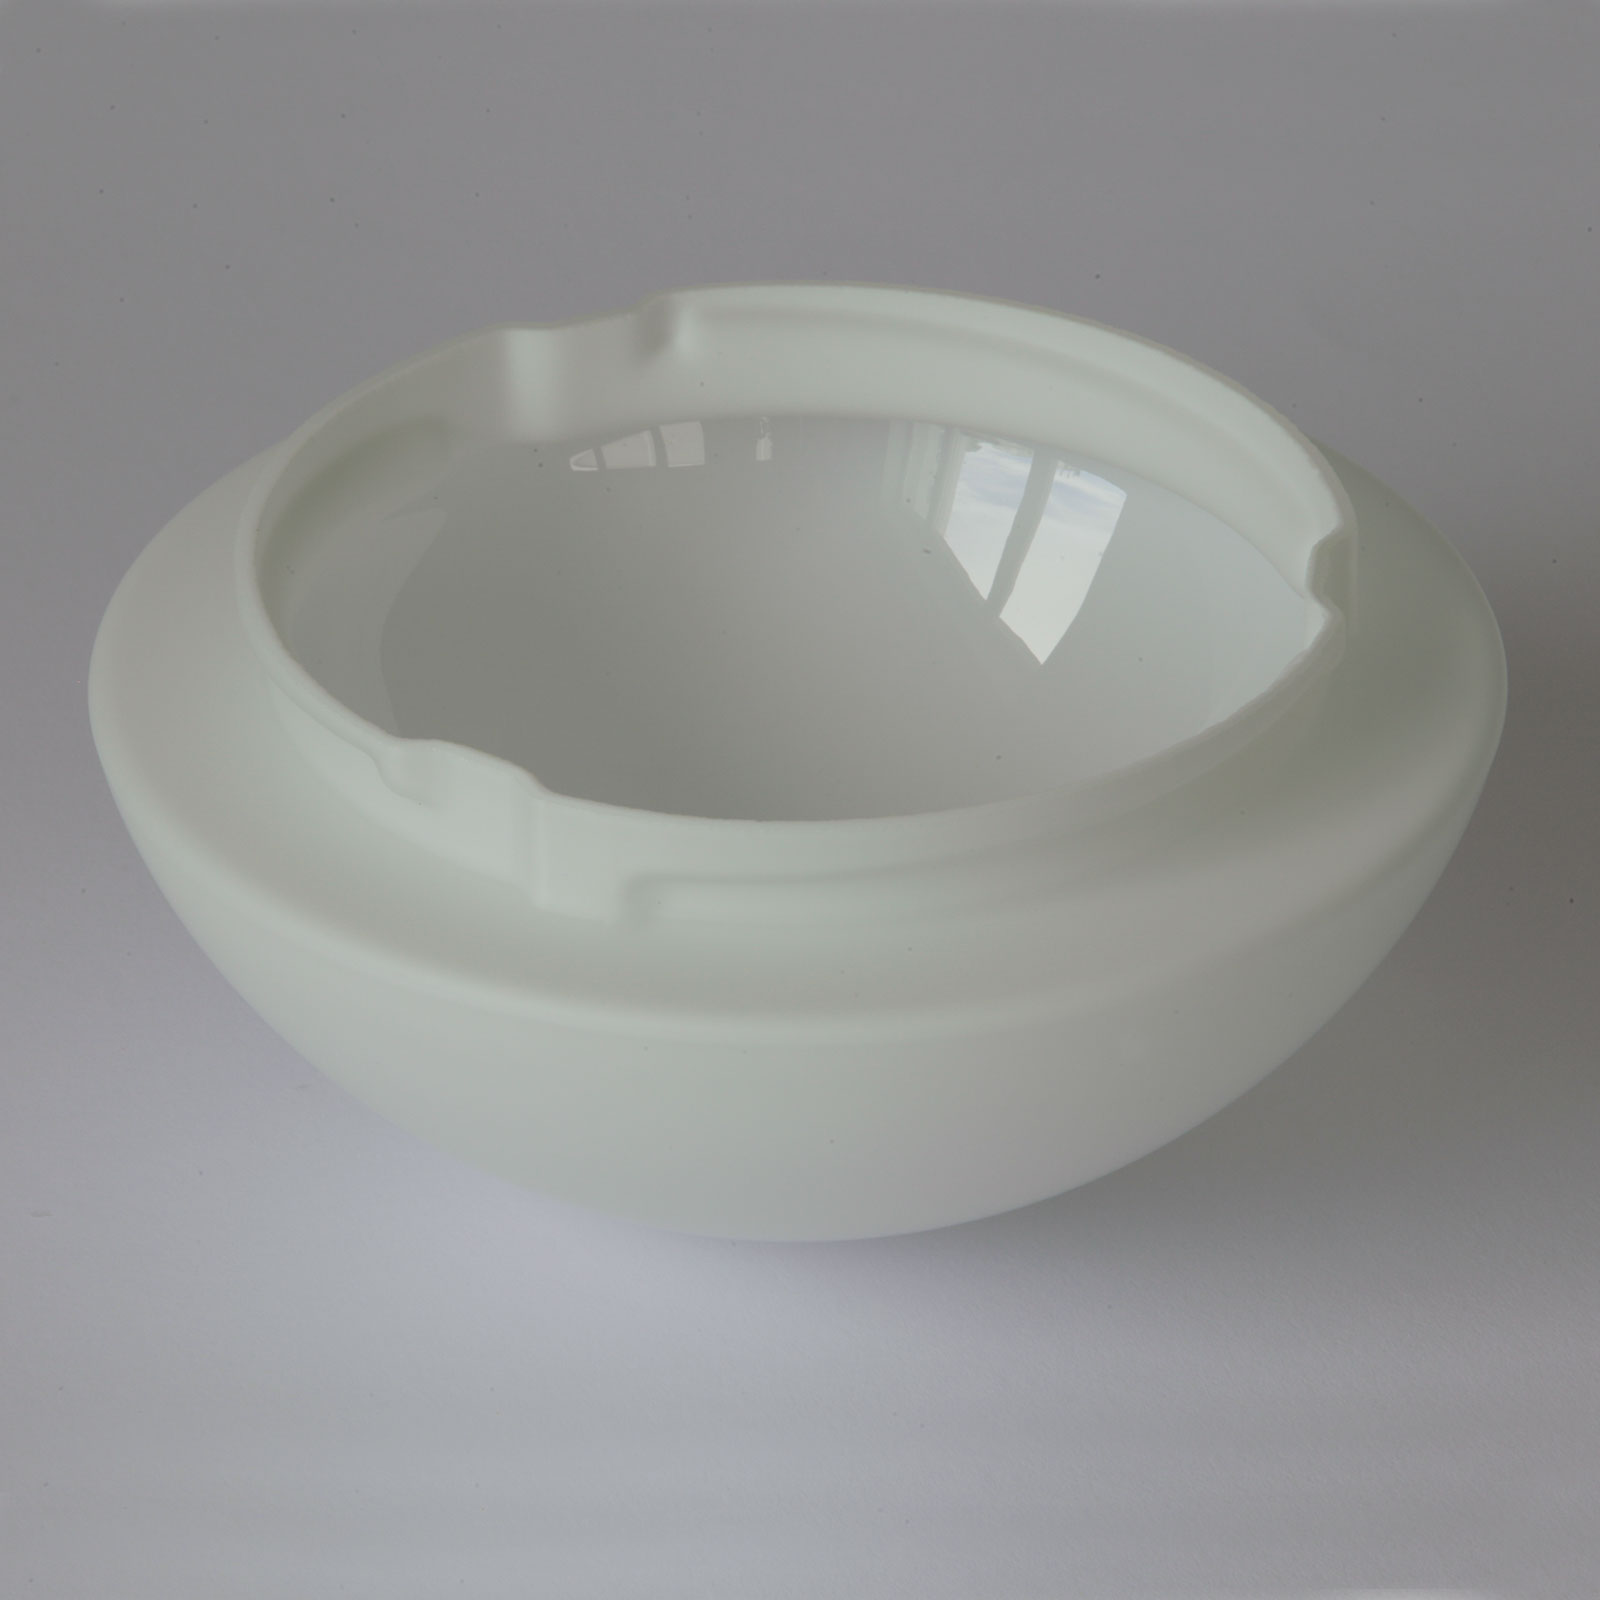 Funktionale Opalglas-Deckenleuchte AURORA LED, Ø 20–60 cm: Außen samtig-mattiertes Triplex-Opalglas, Ø 20 cm mit Bajonetthalterung